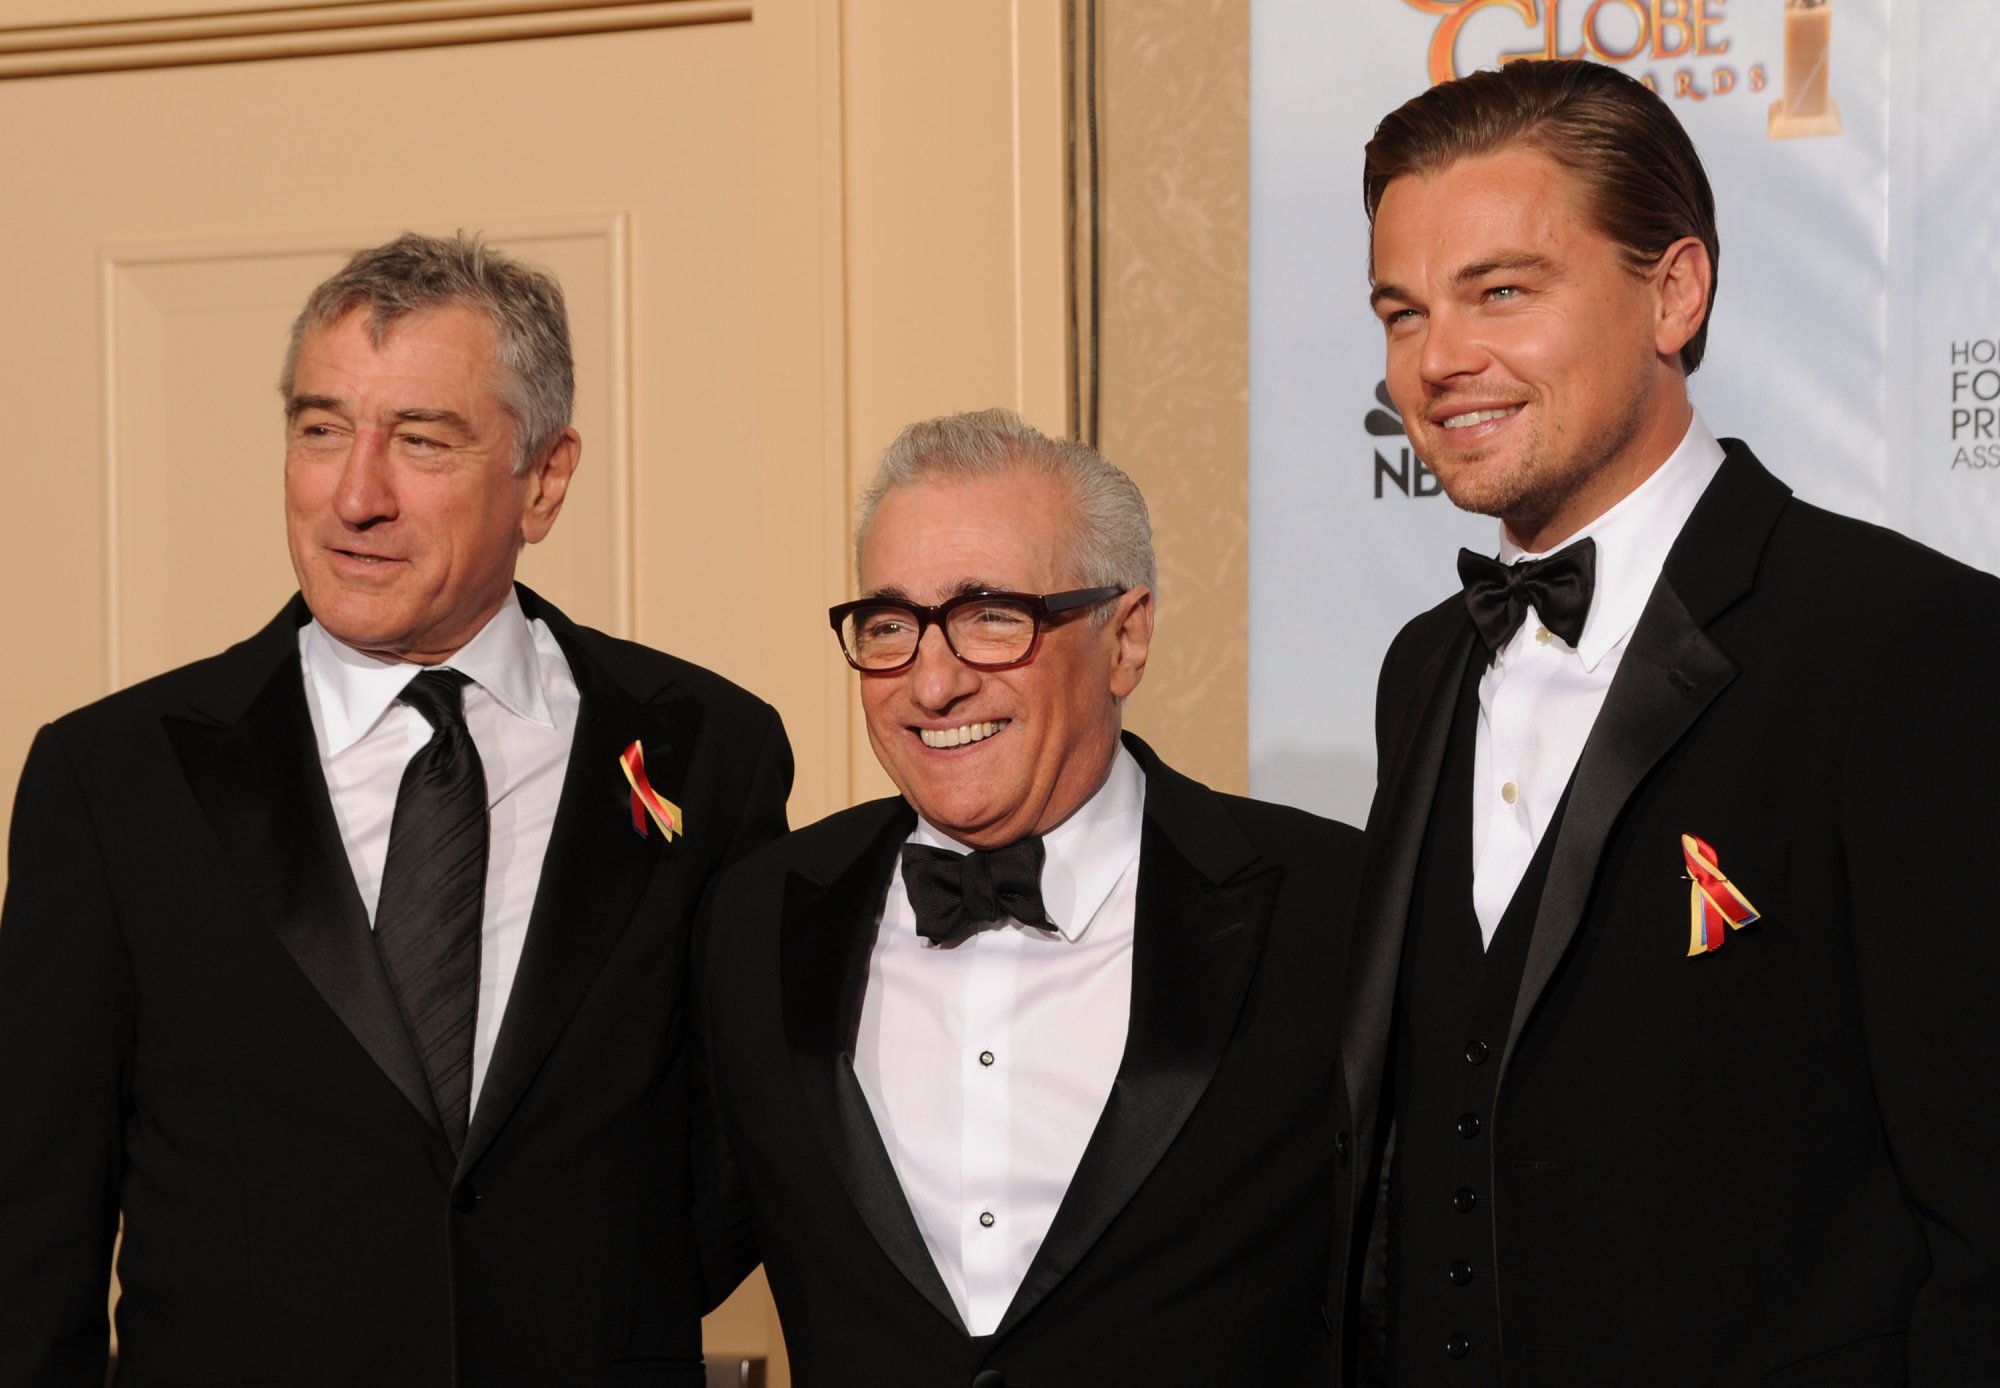 Martin Scorsese aux côtés de Robert De Niro et Leonardo Di Caprio en marge des Golden Globes à Los Angeles, le 17 janvier 2010.